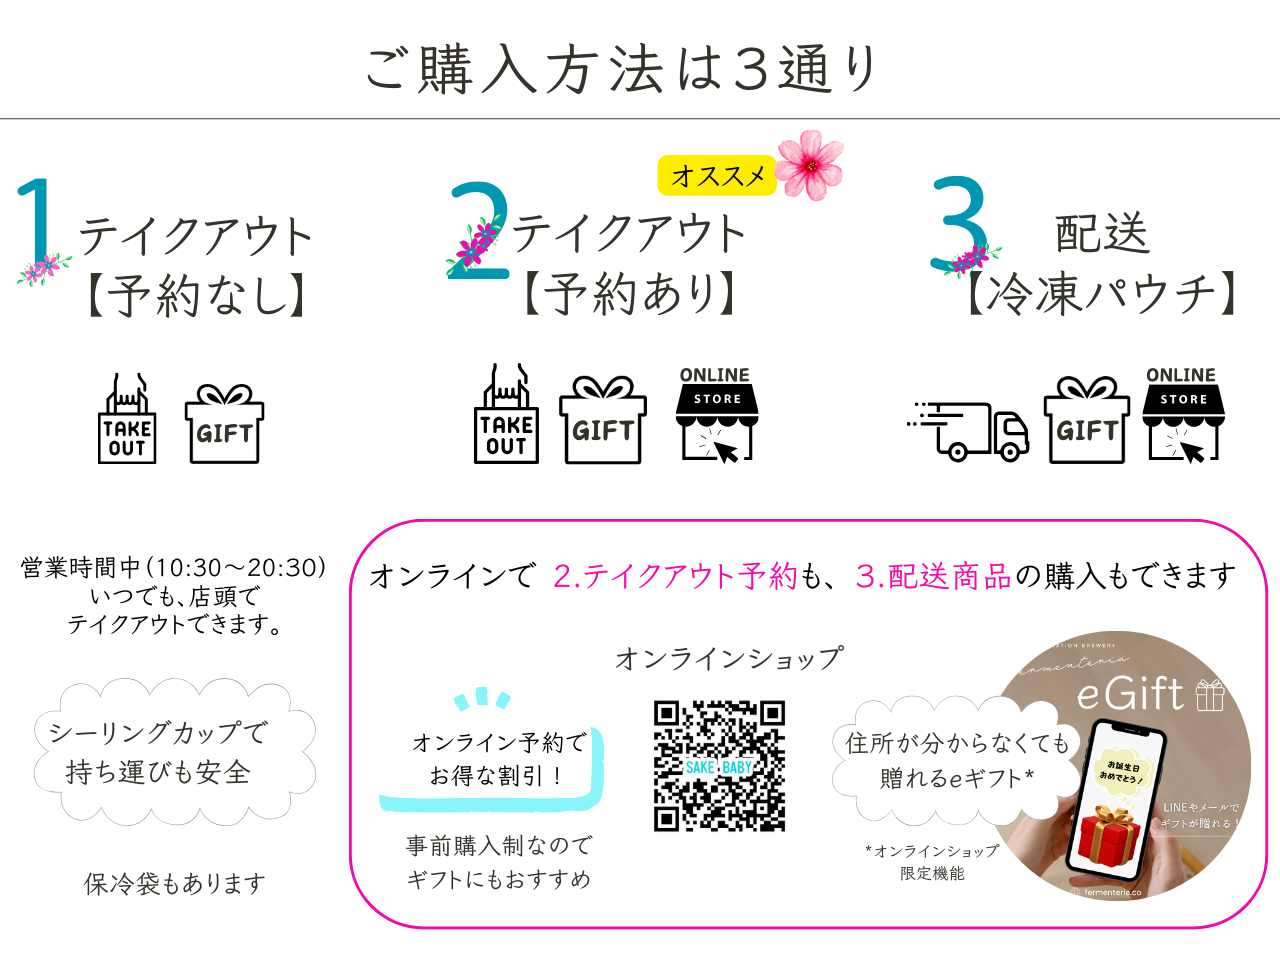 【予約受付開始】仙台駅ナカで毎日醸される出来立ての生クラフトサケ「サケベイビー」の醸造スタート